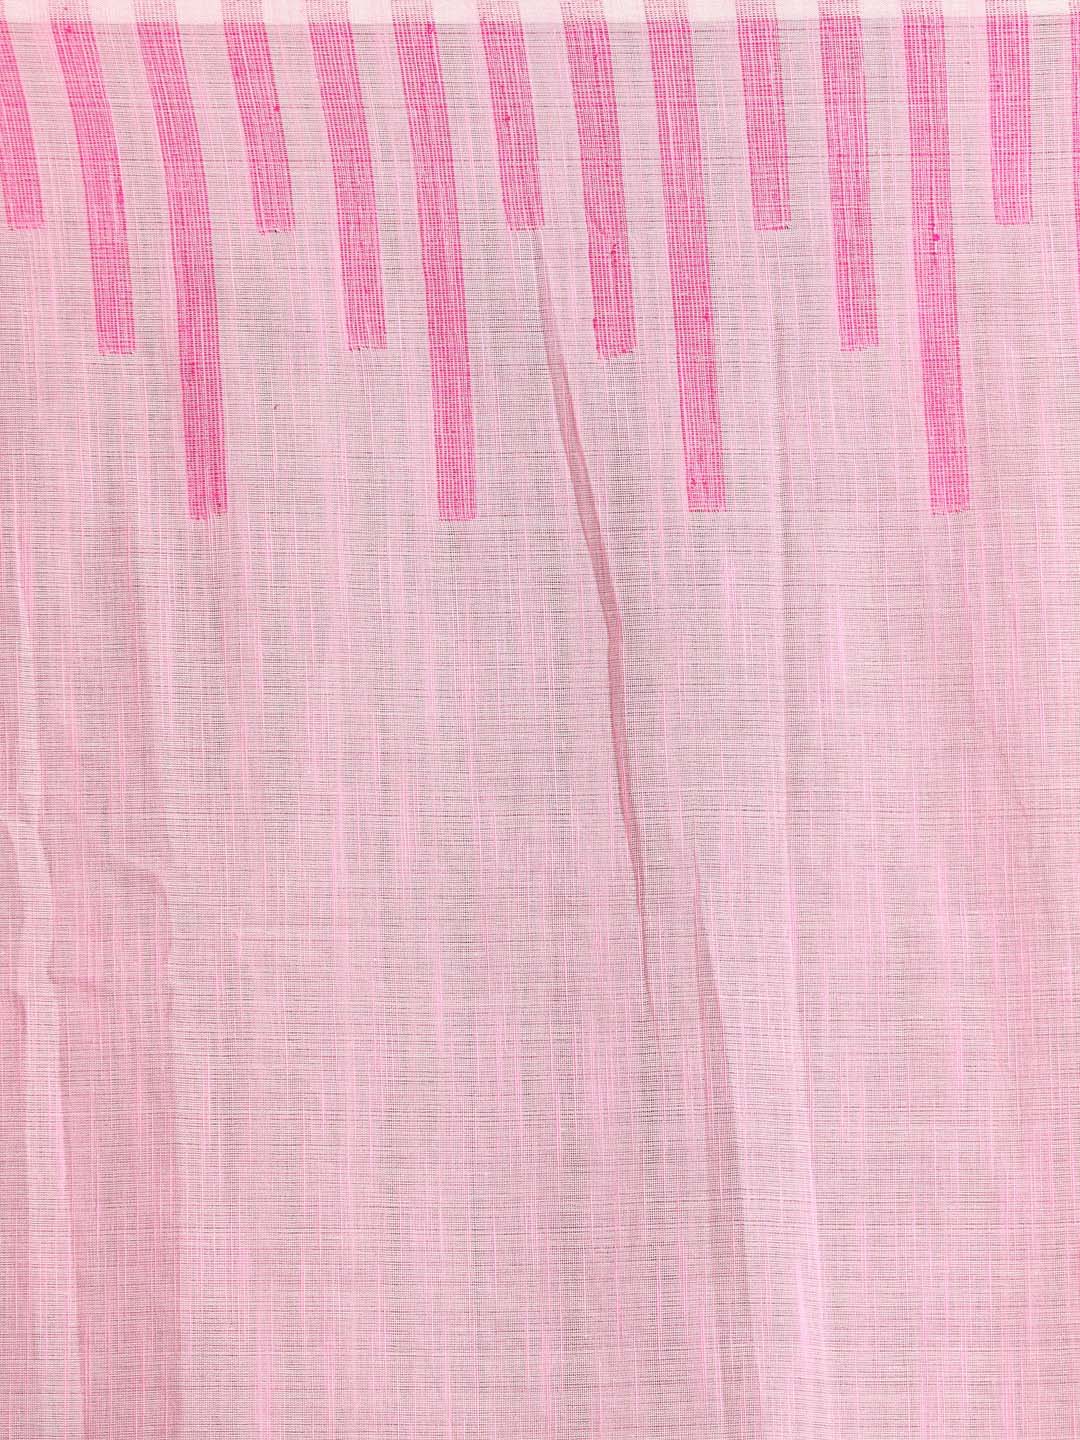 Indethnic Pink Bengal Handloom Pure Cotton Saree Work Saree - Saree Detail View